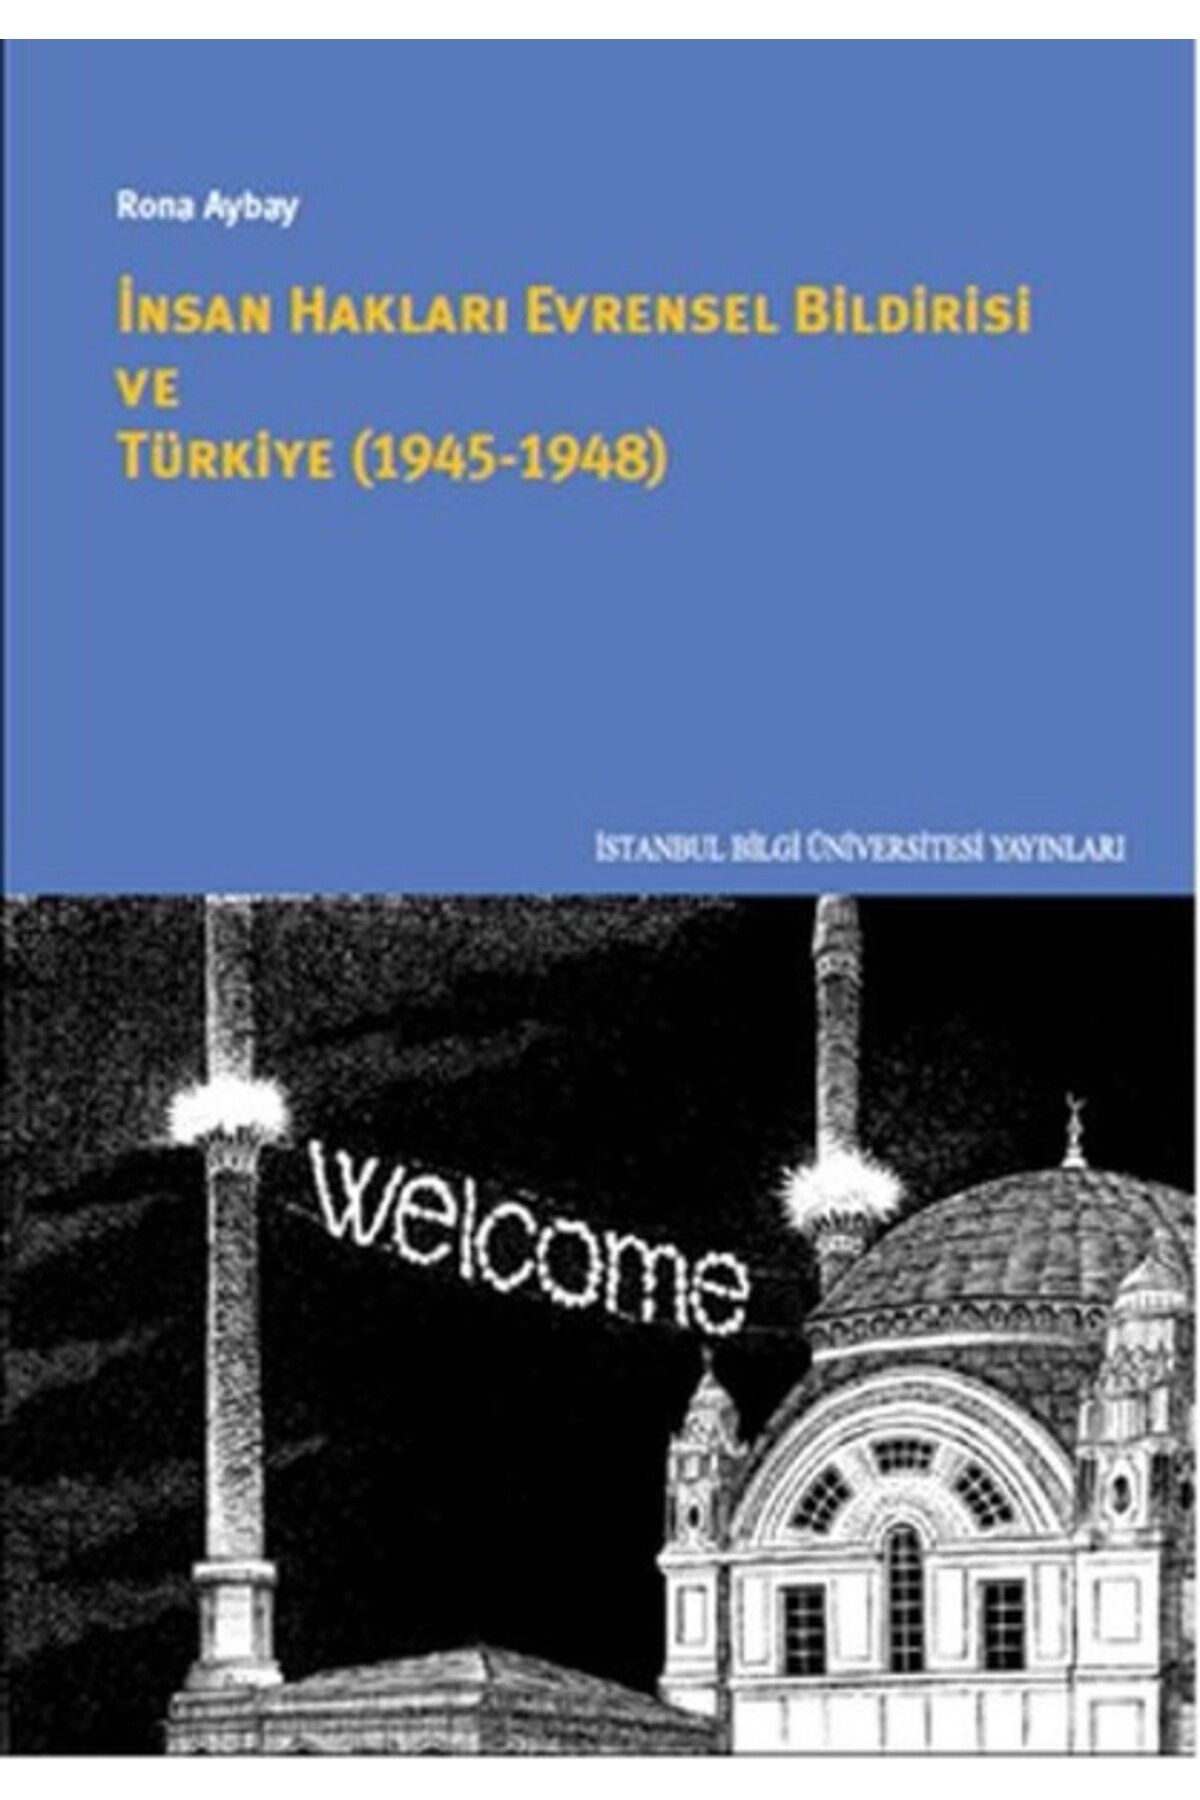 İstanbul Bilgi Üniversitesi Yayınları İnsan Hakları Evrensel Bildirisi ve Türkiye (1945-1948) İstanbul Bilgi Üniversitesi Ya kitap